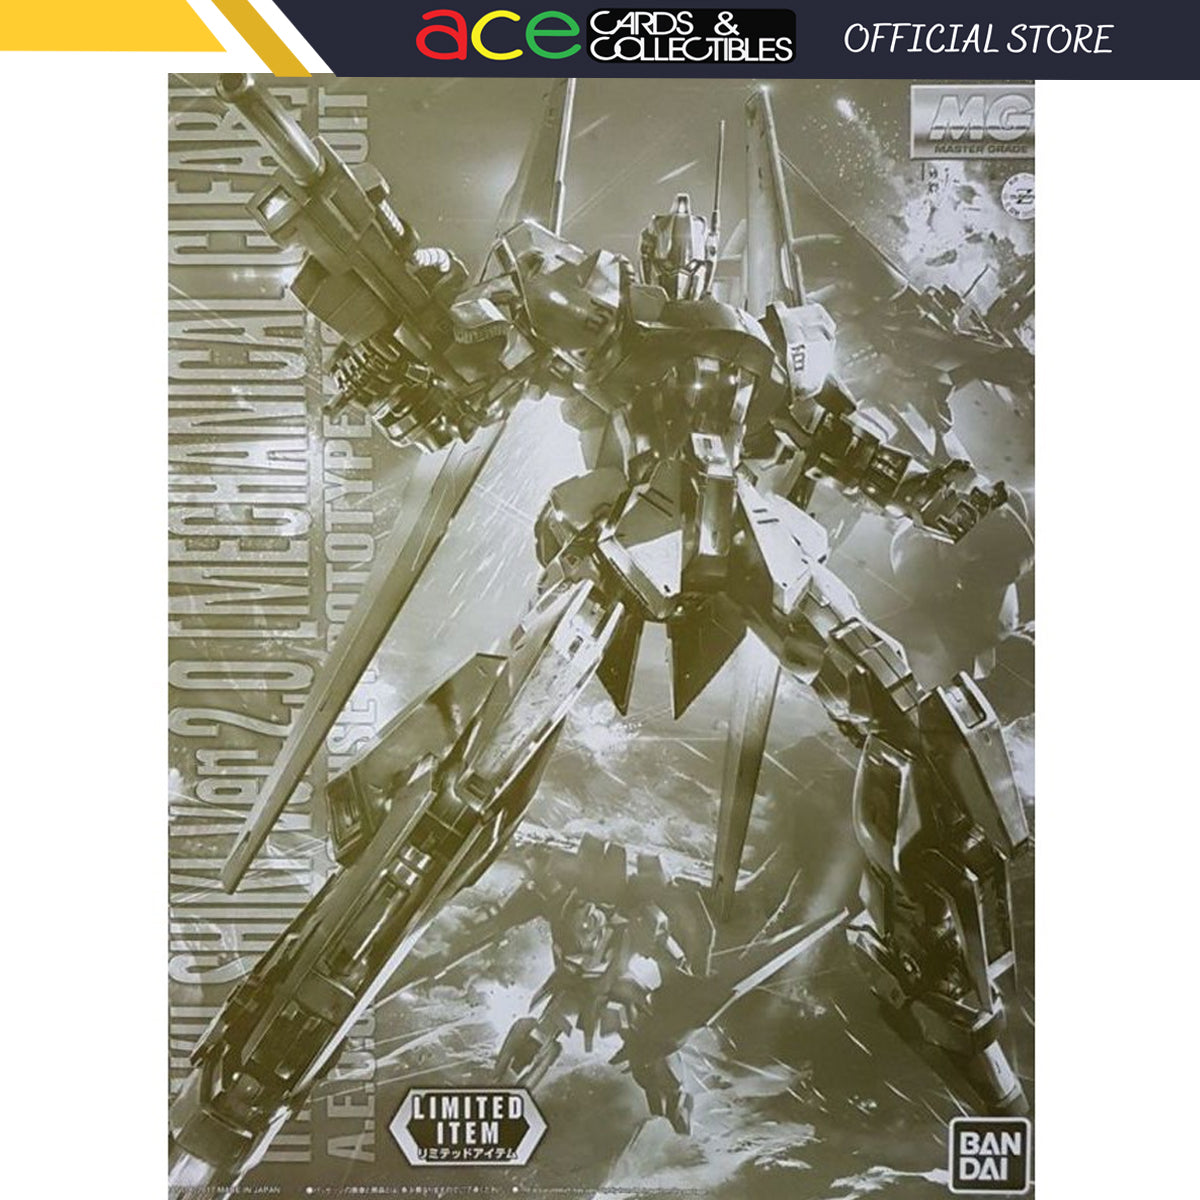 Gundam MG 1/100 Hyaku-Shiki Ver.2.0 [Mechanical Clear]-Bandai-Ace Cards & Collectibles